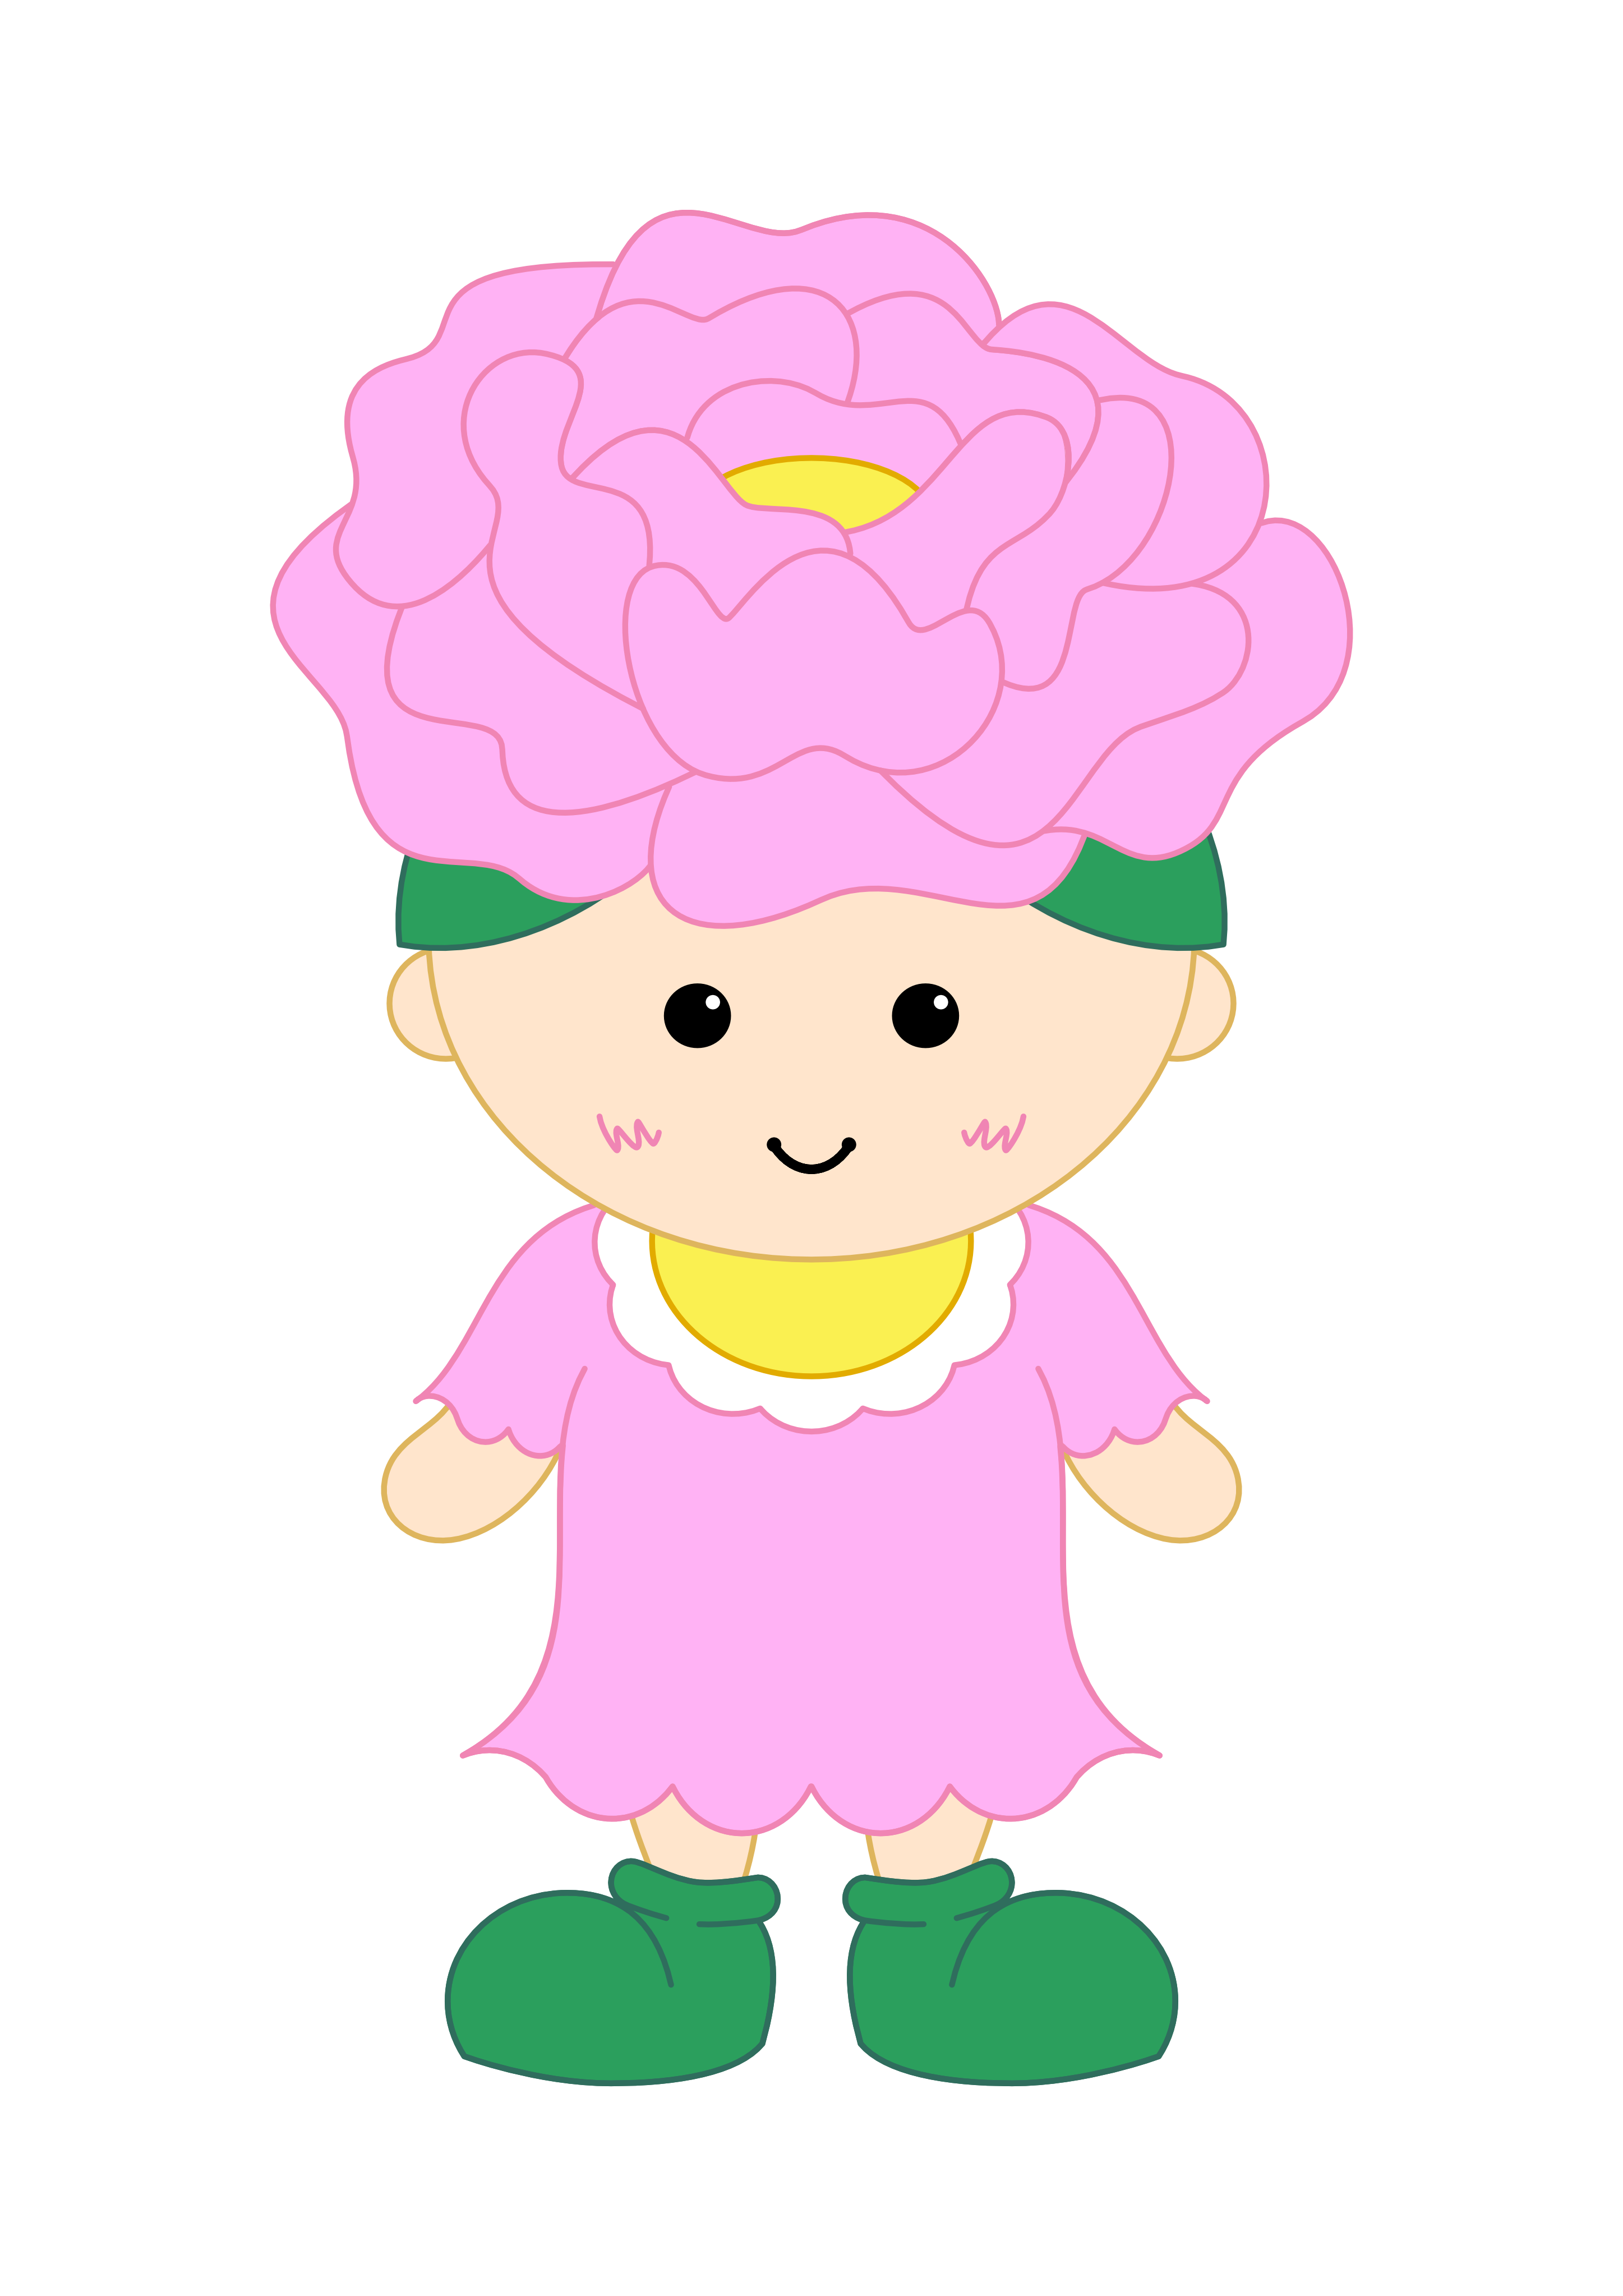 ピンク色の帽子と黄色い涎掛け、ピンク色の服を着た子供の姿をしたキャラクターのイラスト